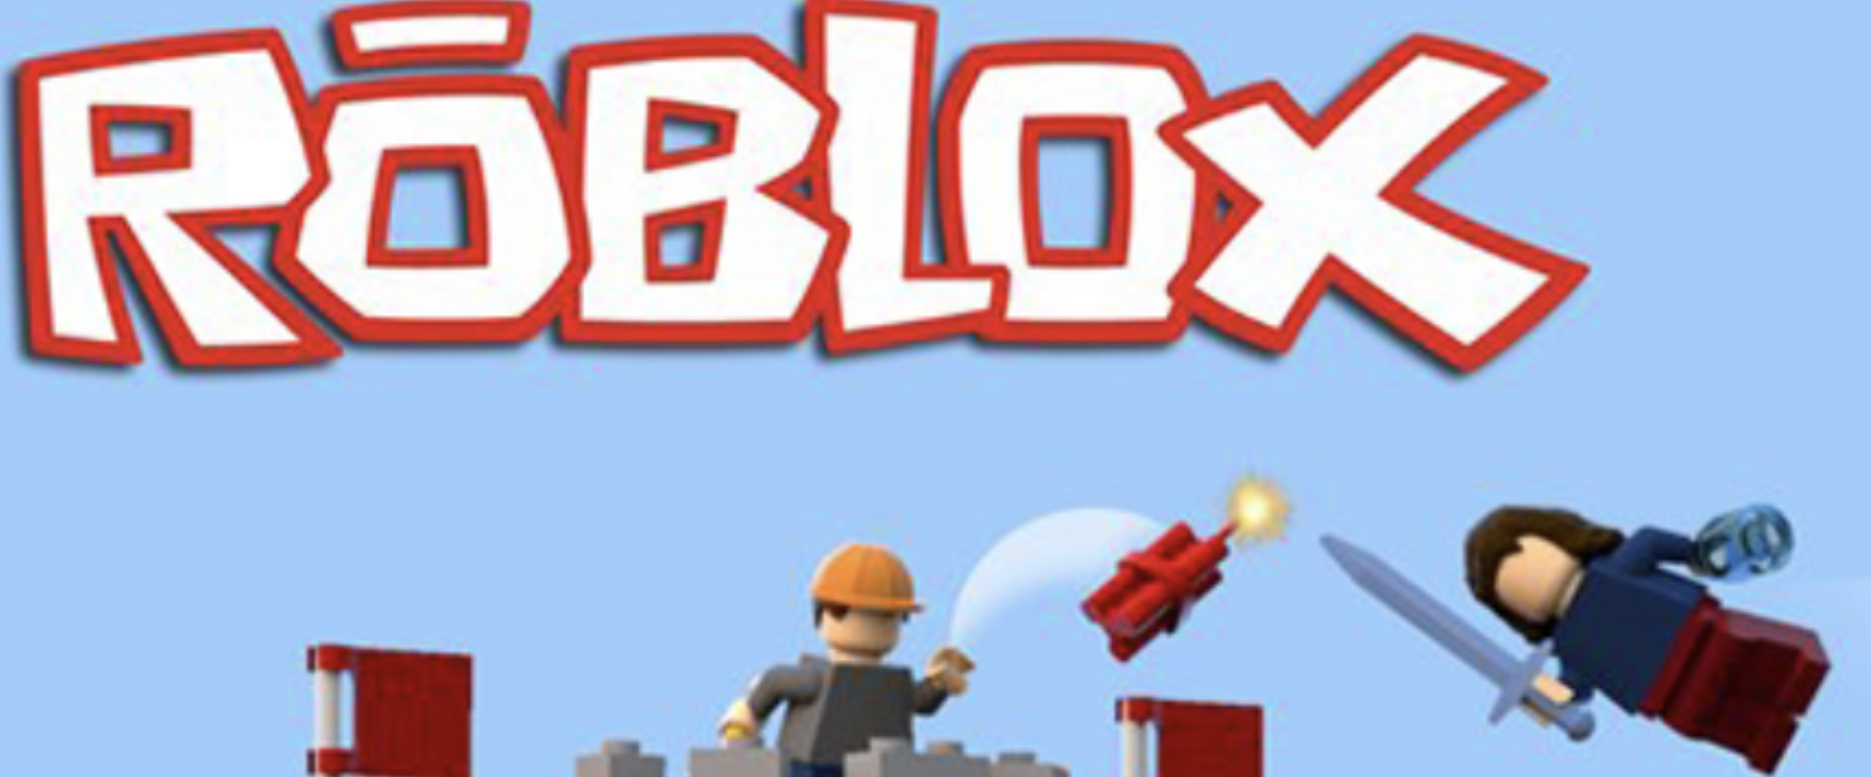 LEGO ROBLOX GameVideo, LEGO Fanonpedia